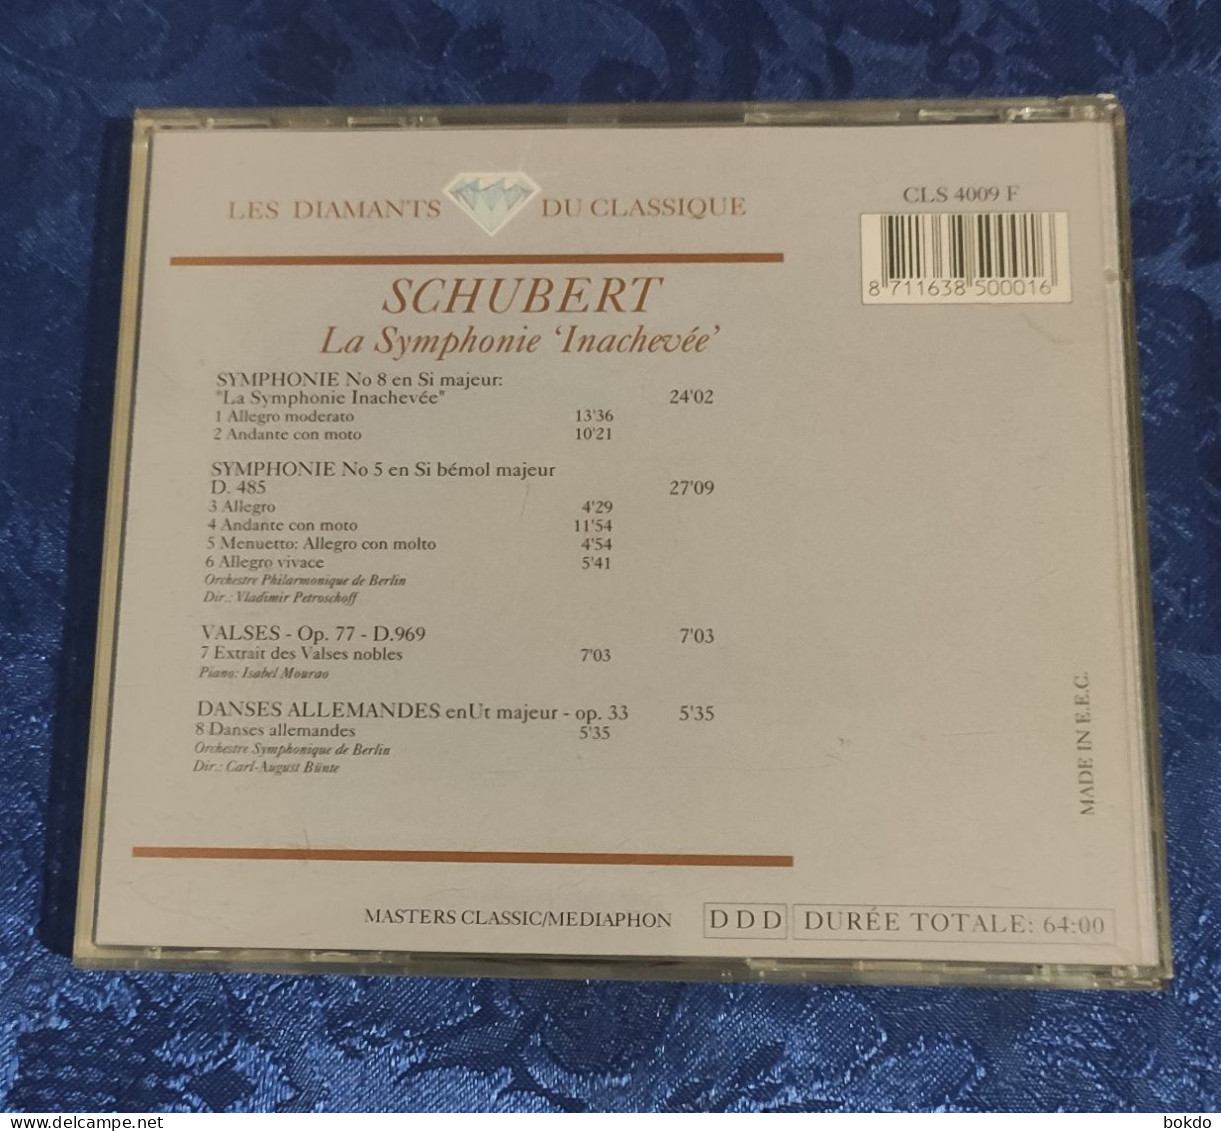 Schubert - La Symphonie "inachevée" - Classique